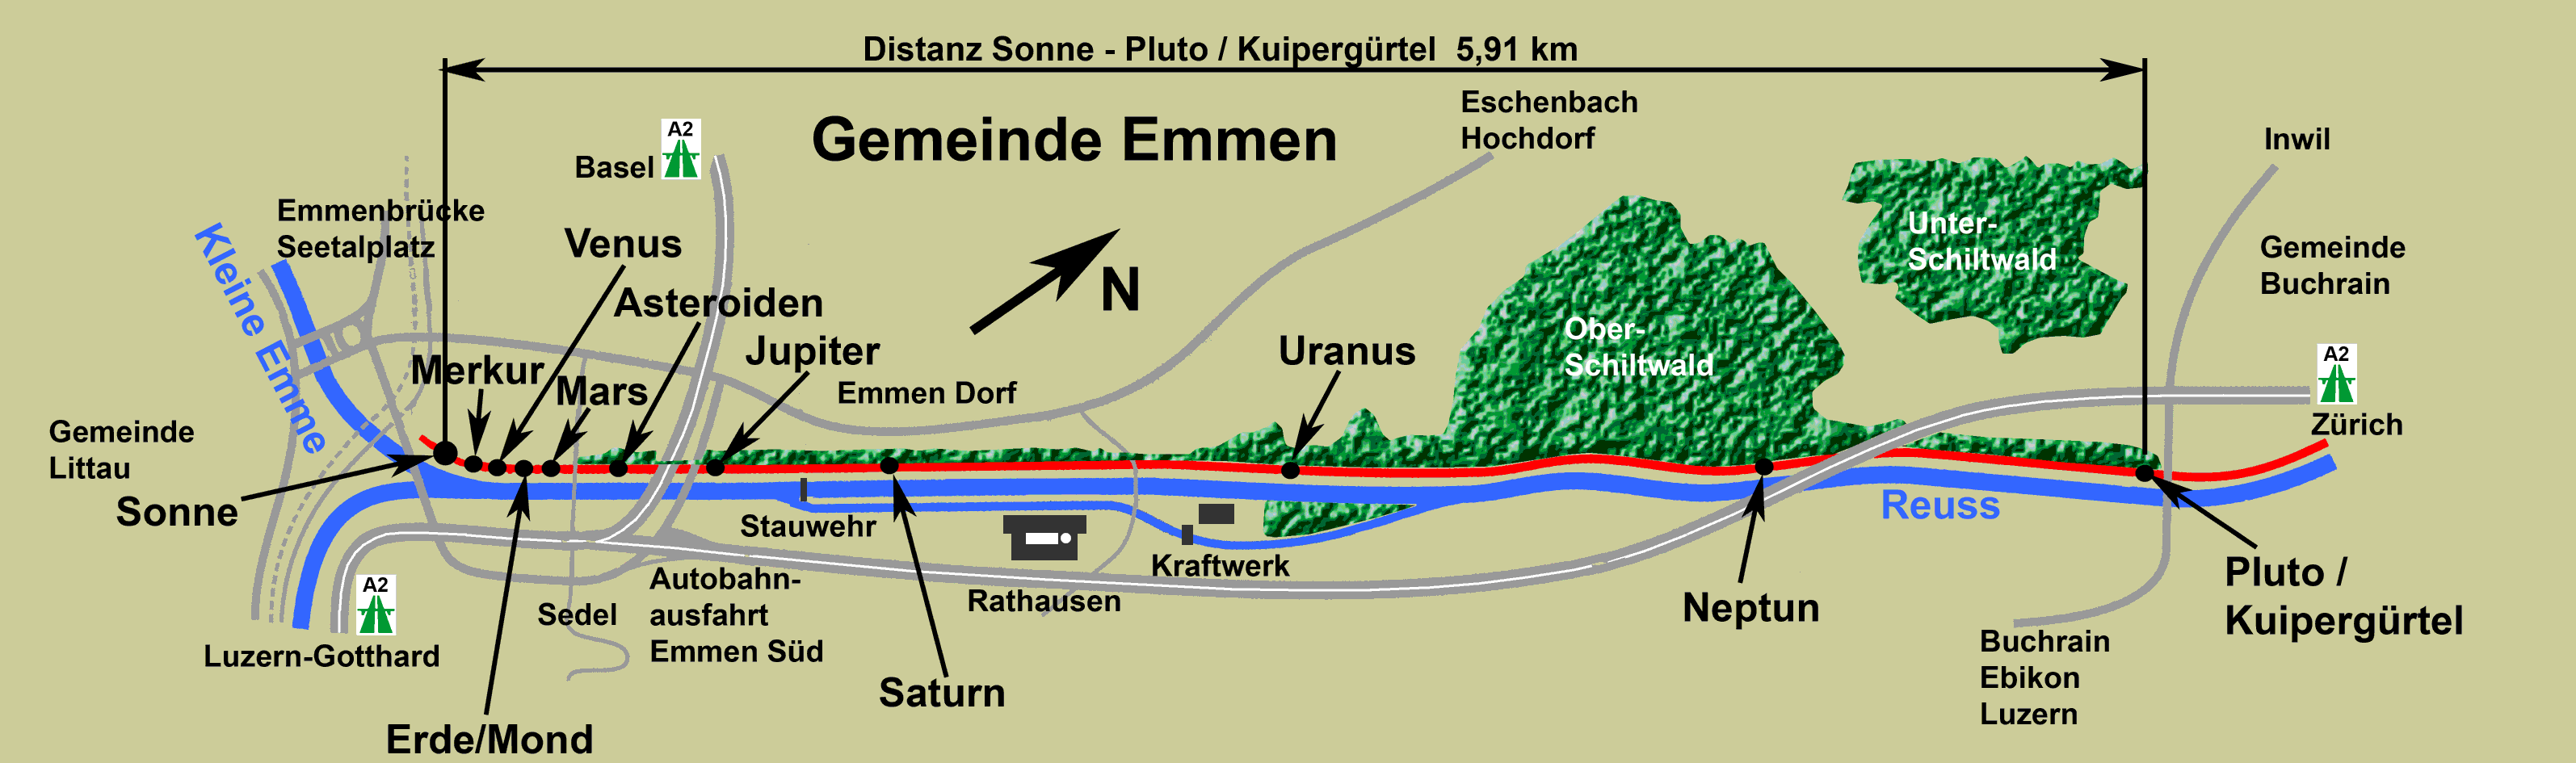 Karte Reussufer